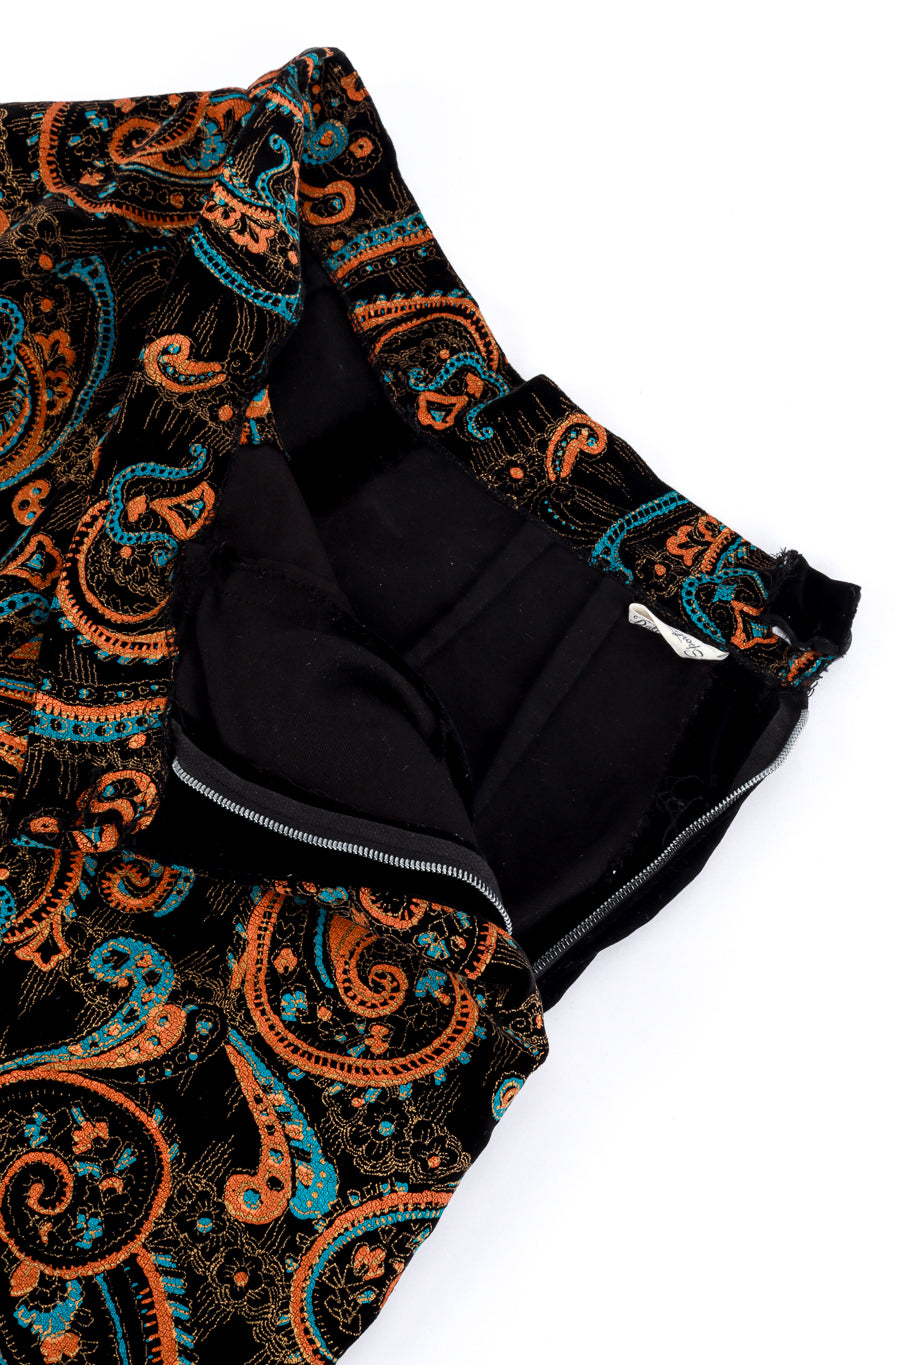 Paisley Pant Set by Dallas Sportswear pants detail @RECESS LA